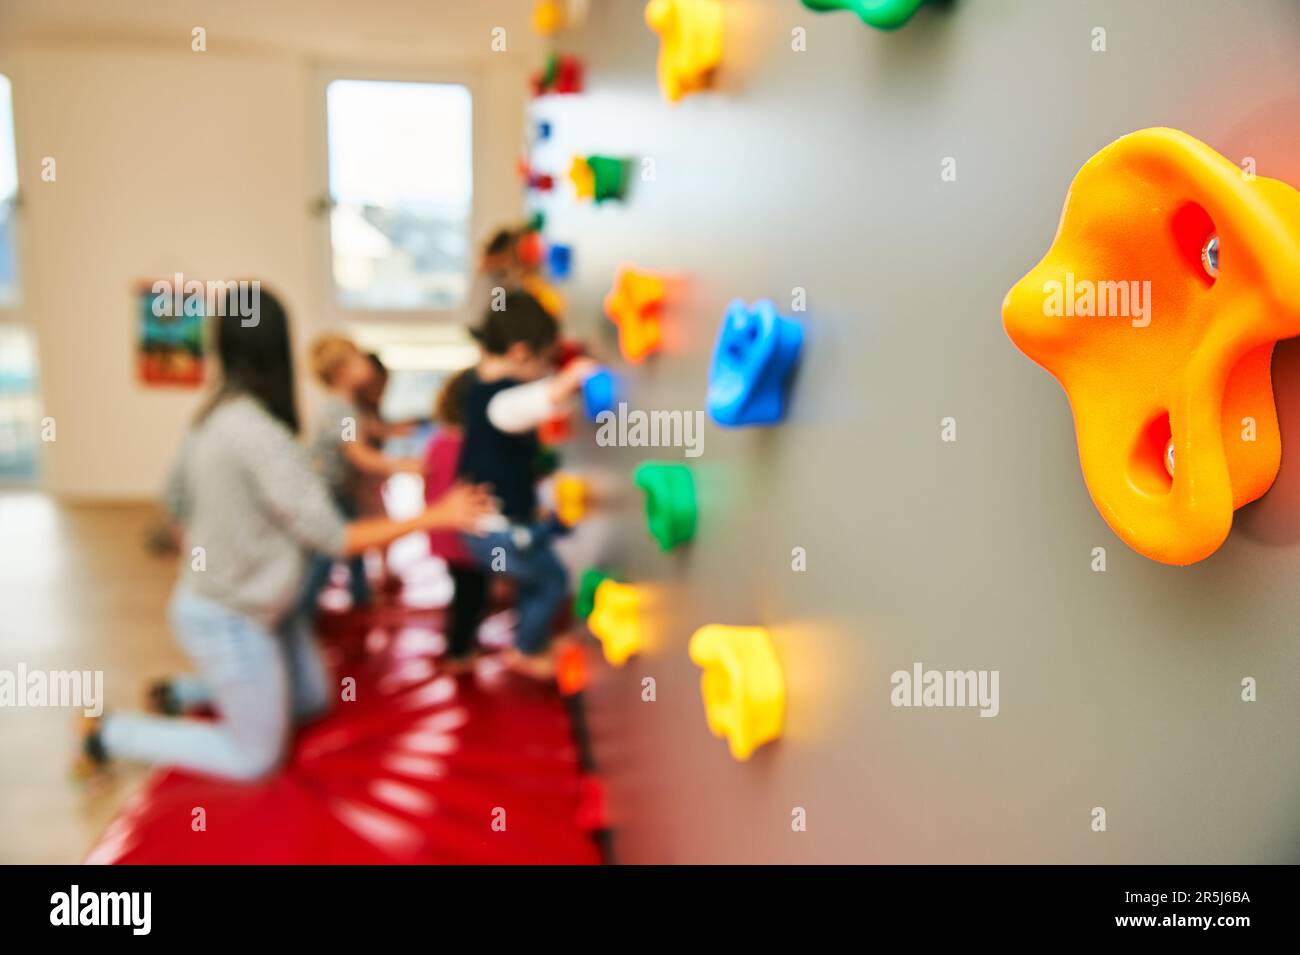 Mur avec poignées d'escalade dans la garderie ou la maternelle, activité pour les petits enfants Banque D'Images